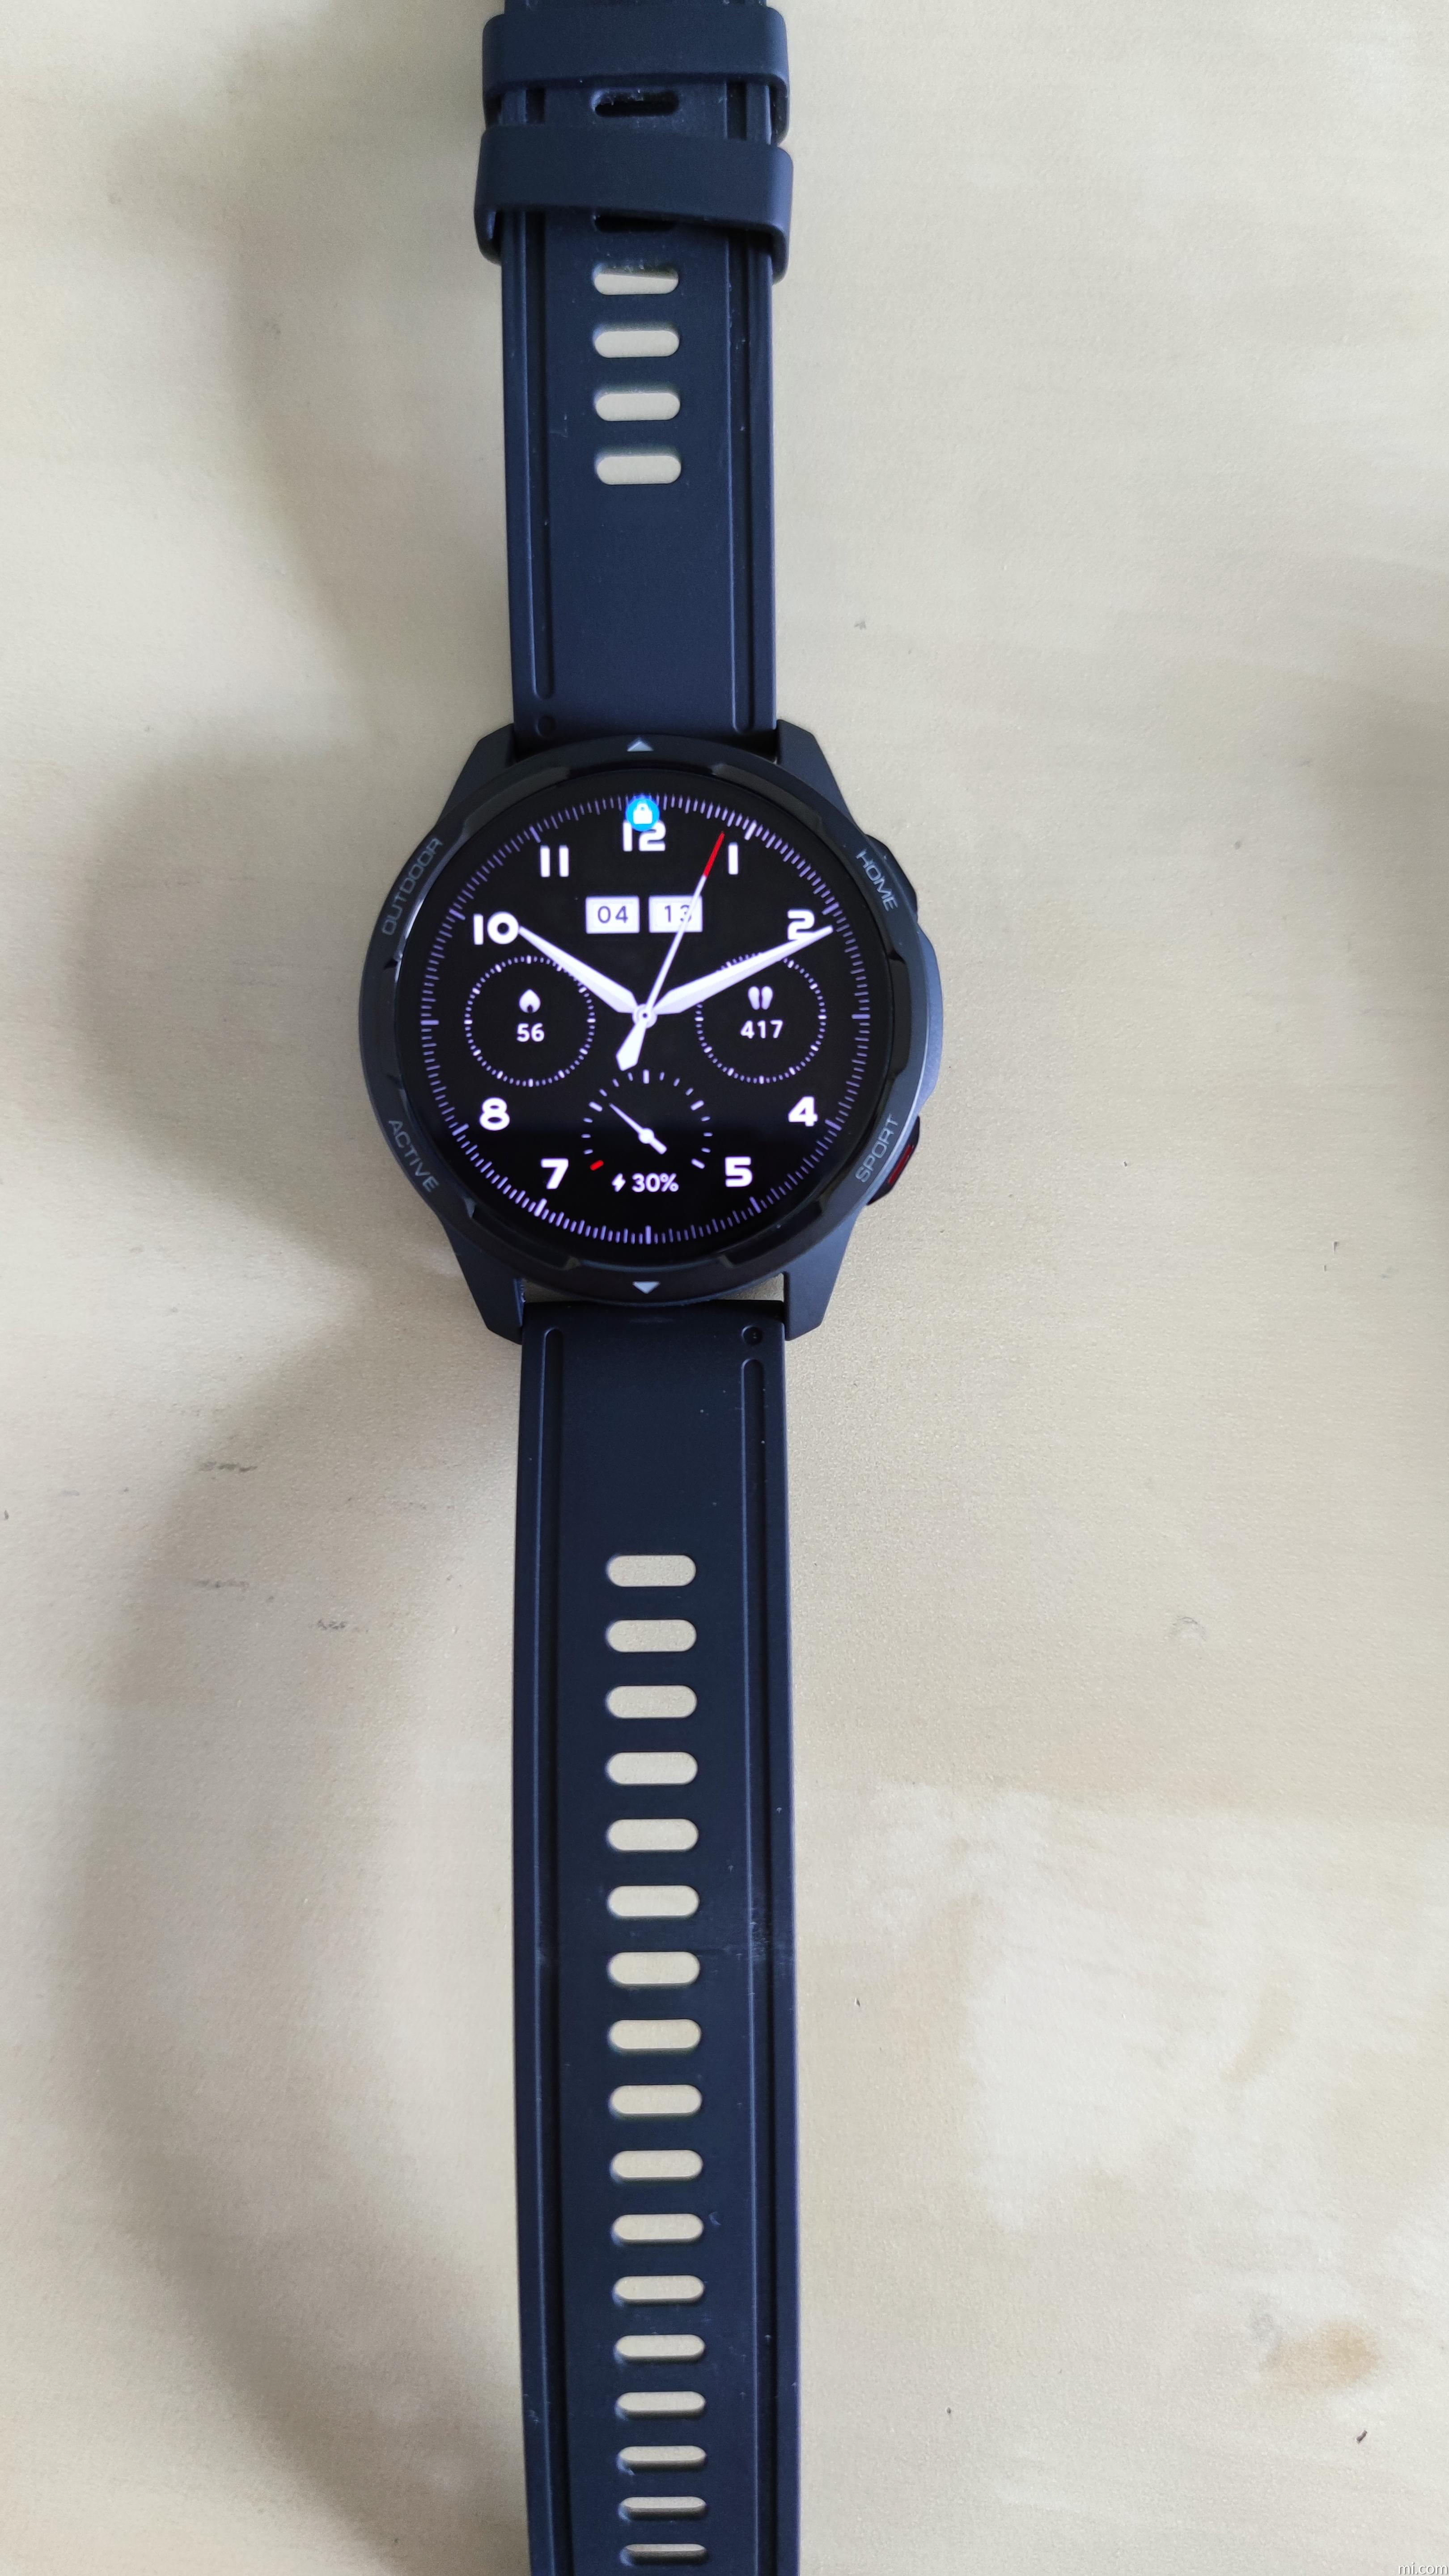 Review: Xiaomi Watch S1 Active - MegaBites